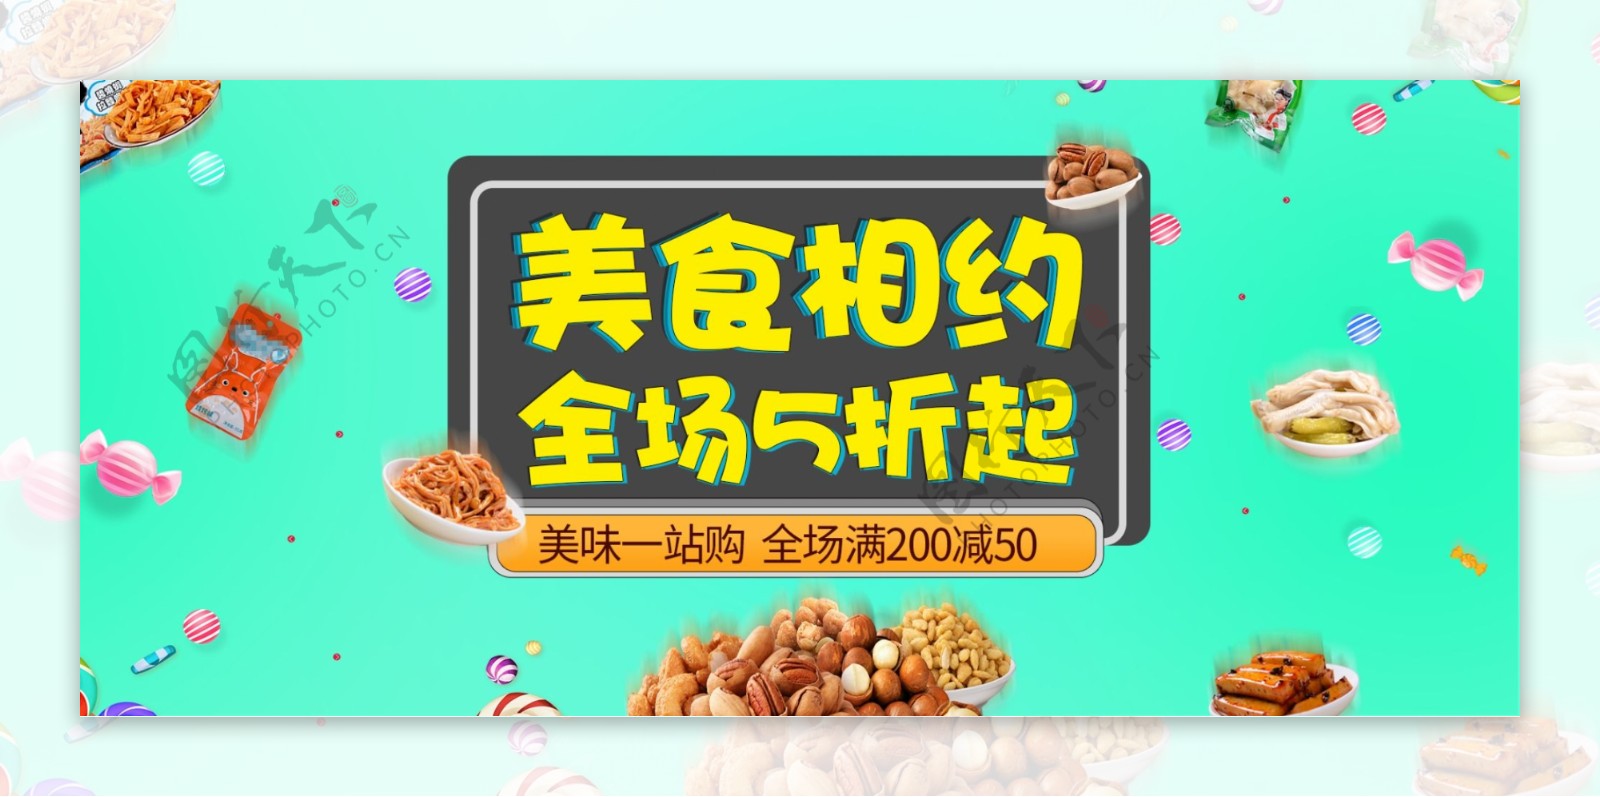 绿色清新休闲简约美食零食食品淘宝电商海报banner